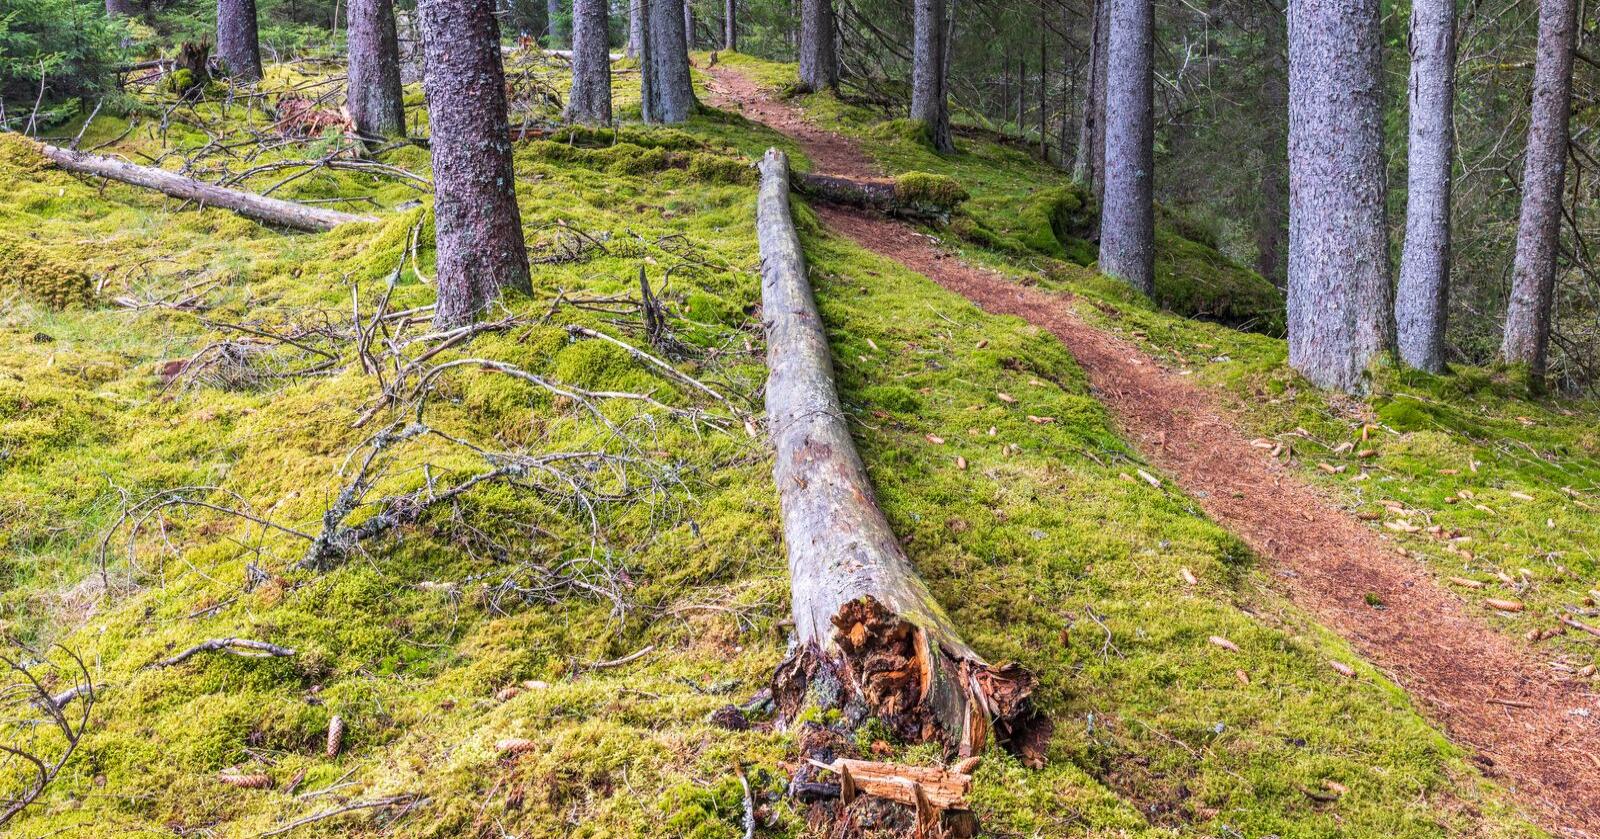 Mer effektivt: Hvis klimatiltak skal prioriteres, må skogen brukes mer effektivt til å binde CO2, skriver innsenderen. Foto: Mostphotos